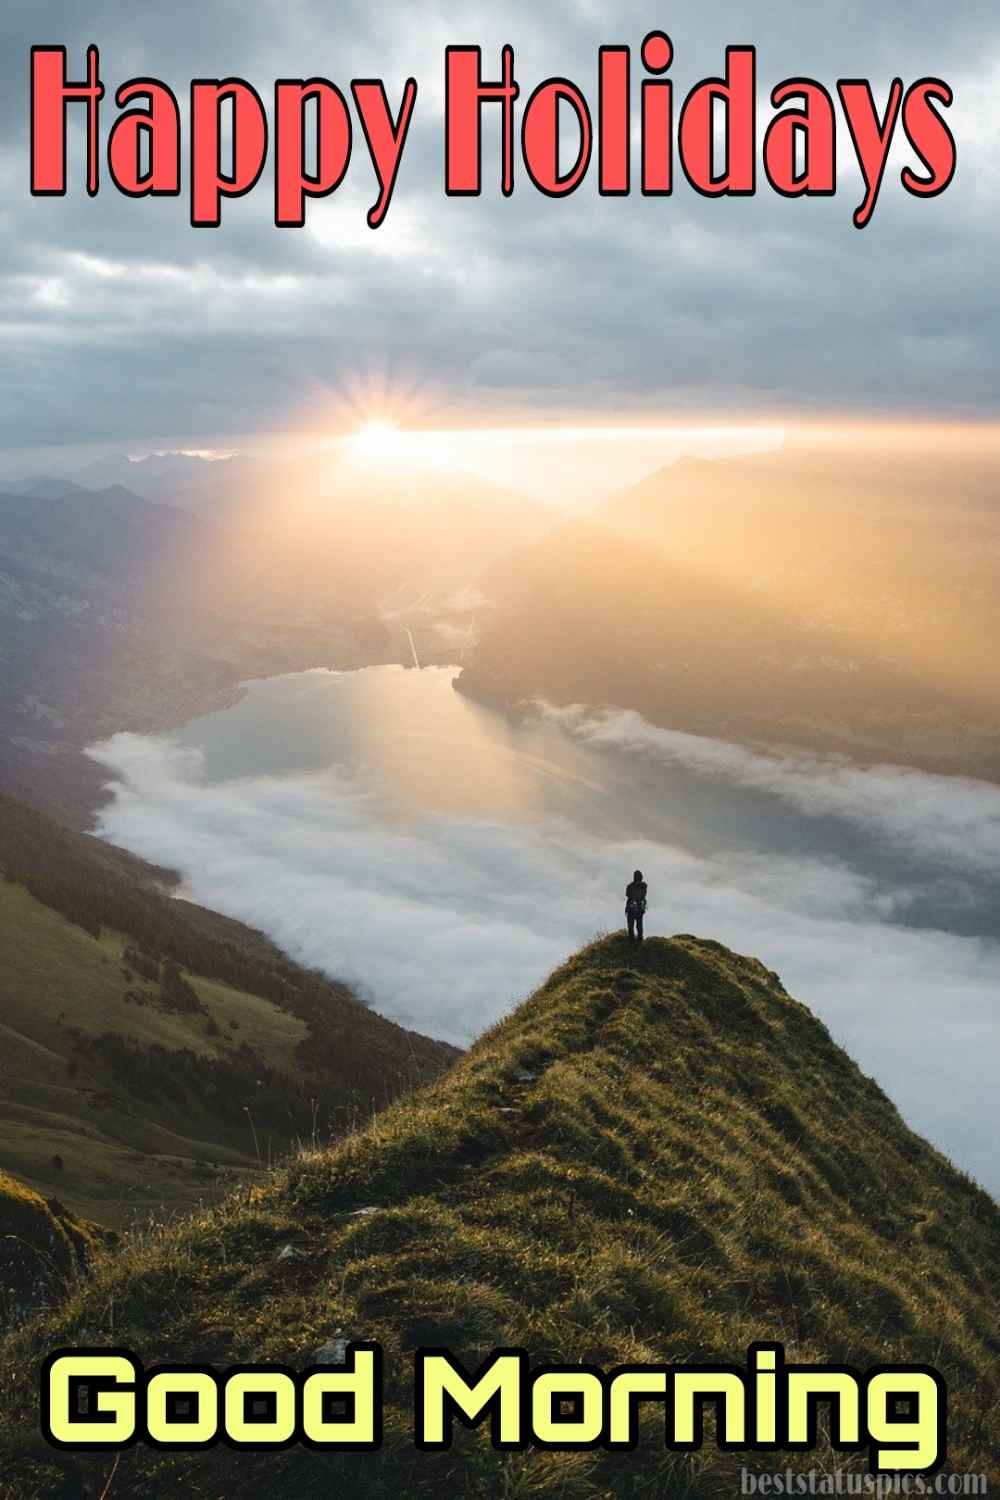 Buongiorno buone feste 2022 augura immagini HD con alba, sole e montagna per la storia di Instagram